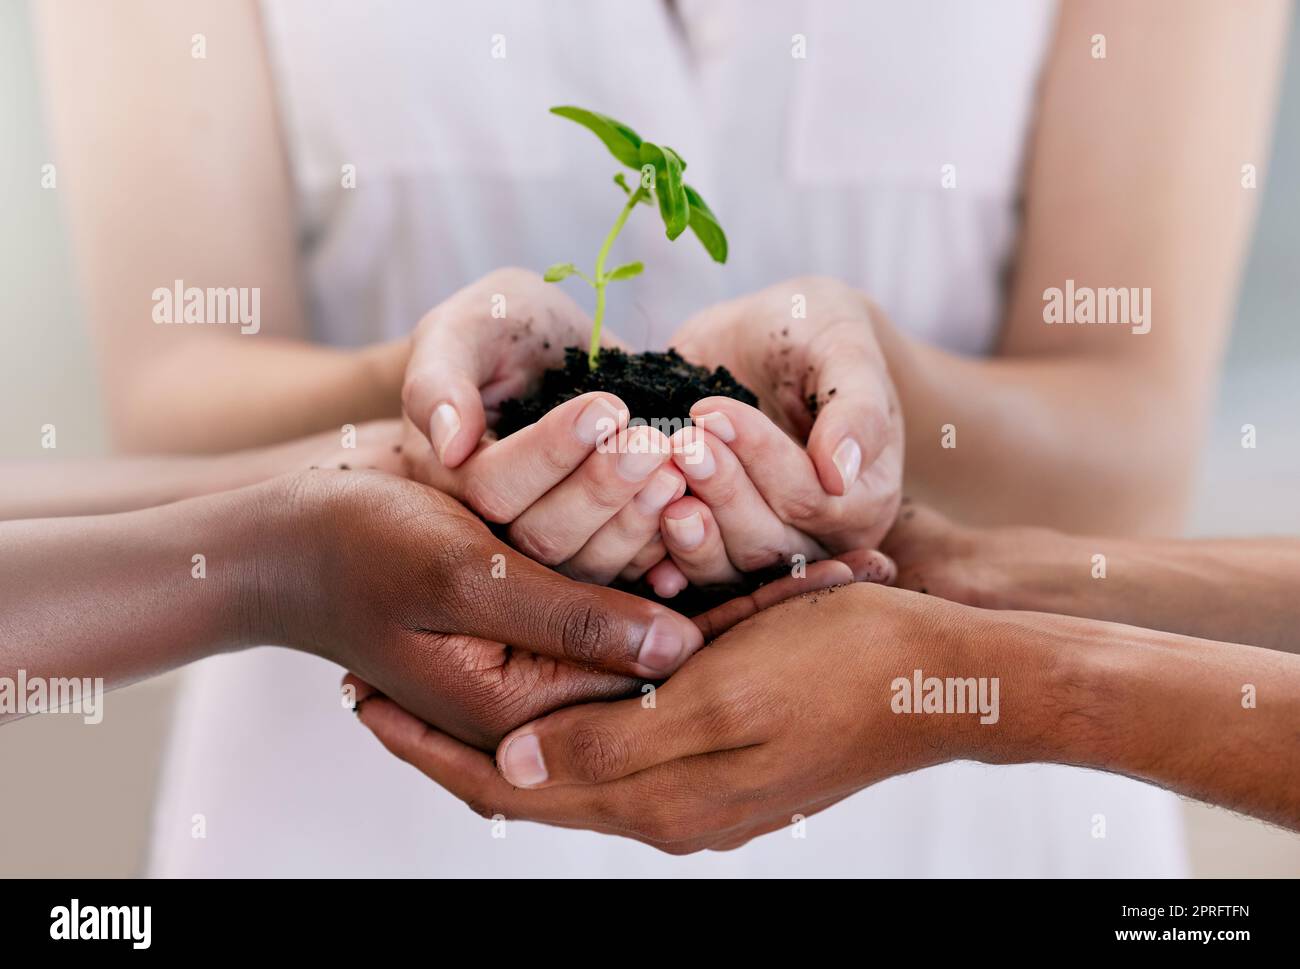 Wachstum, Teamarbeit und Nachhaltigkeit unterstützen die Hände von Geschäftsleuten, die Boden mit Blättern oder Blumen halten. Nachhaltige, kommunale und umweltfreundliche Freunde sind für den Tag der Erde oder die Entwicklung der Welt von großer Bedeutung Stockfoto